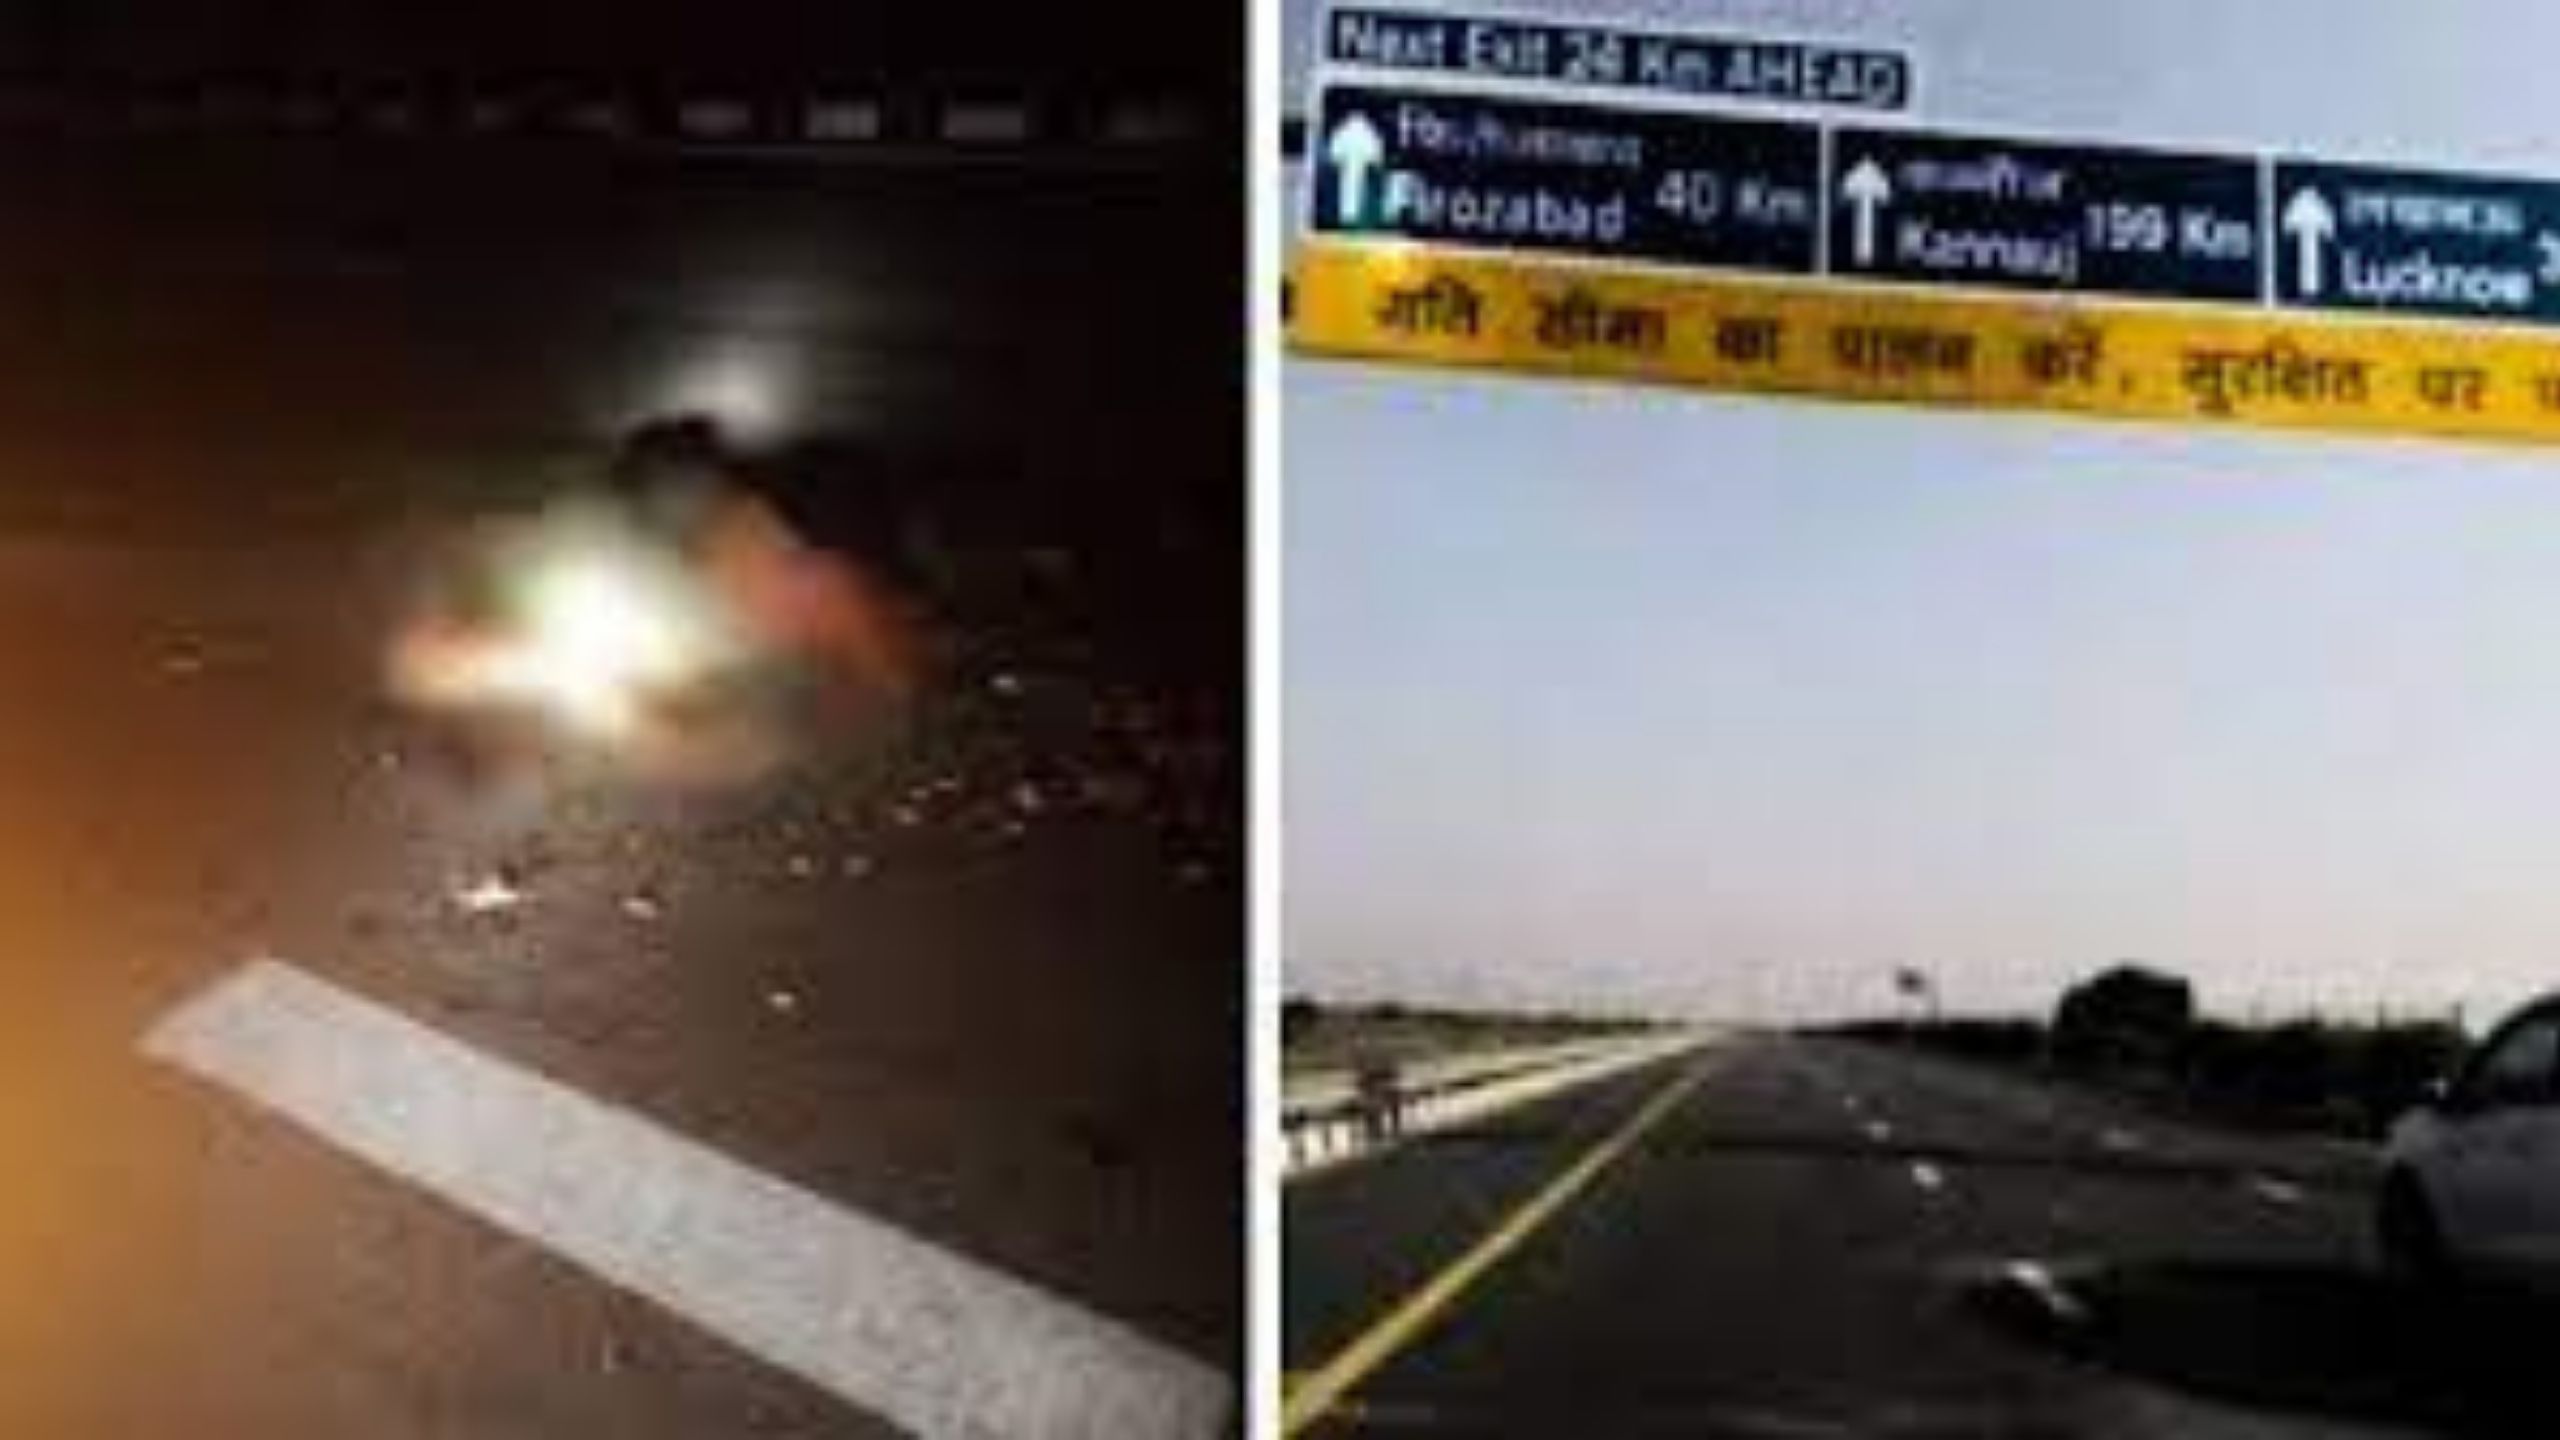 UP : आगरा-लखनऊ एक्सप्रेस वे पर क्षत विक्षत मिला शव, रौंदती रहीं गाड़ियां; बहता रहा खून